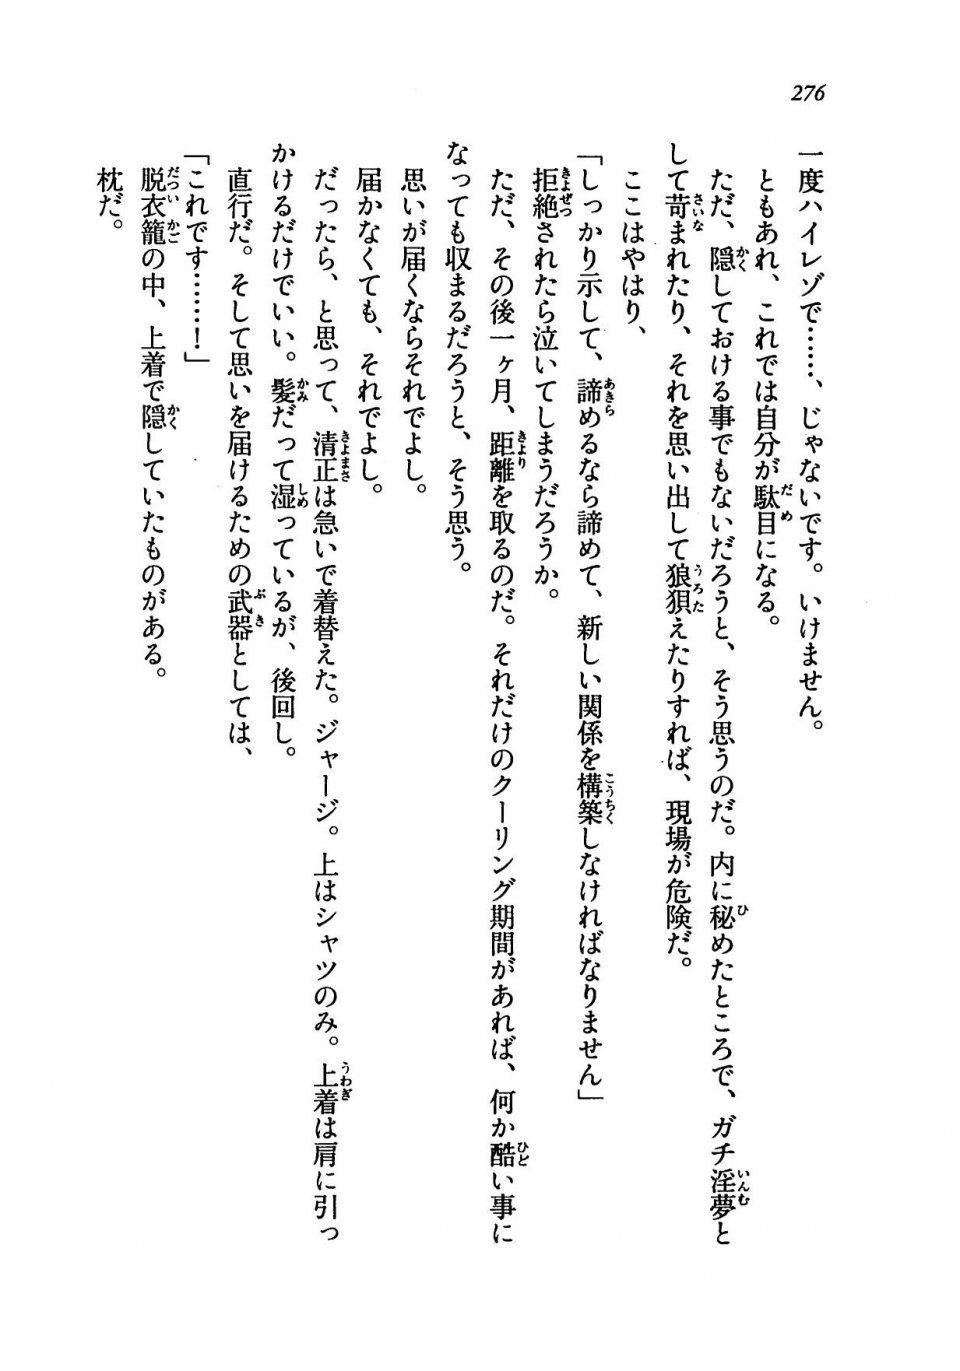 Kyoukai Senjou no Horizon LN Vol 19(8A) - Photo #276